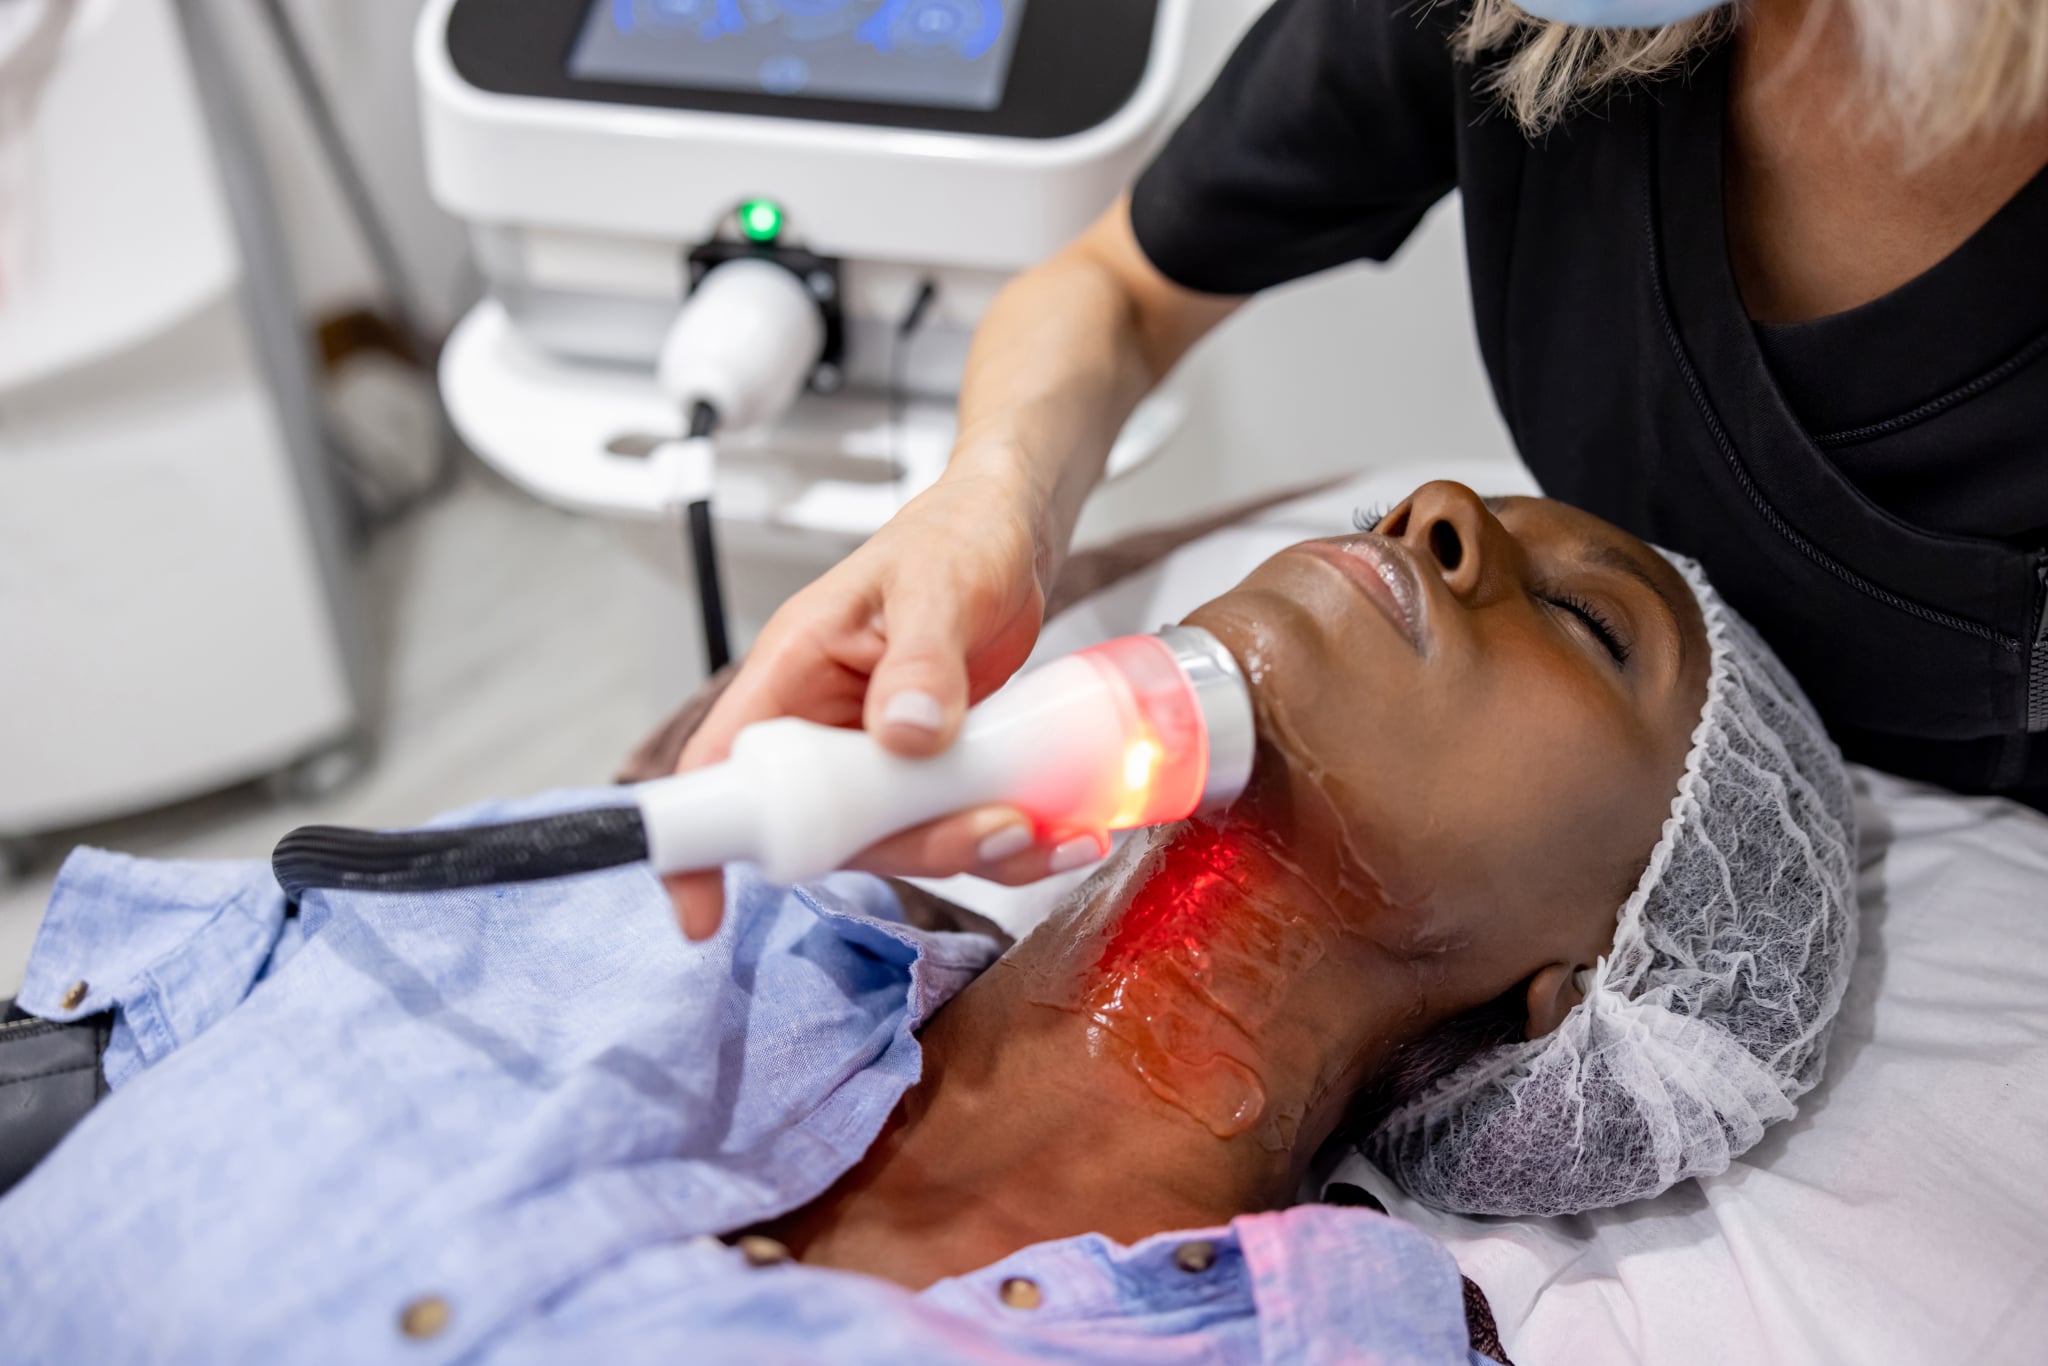 Афроамериканка в спа-салоне проходит омолаживающую процедуру на шее с помощью ультразвука и светотерапии.